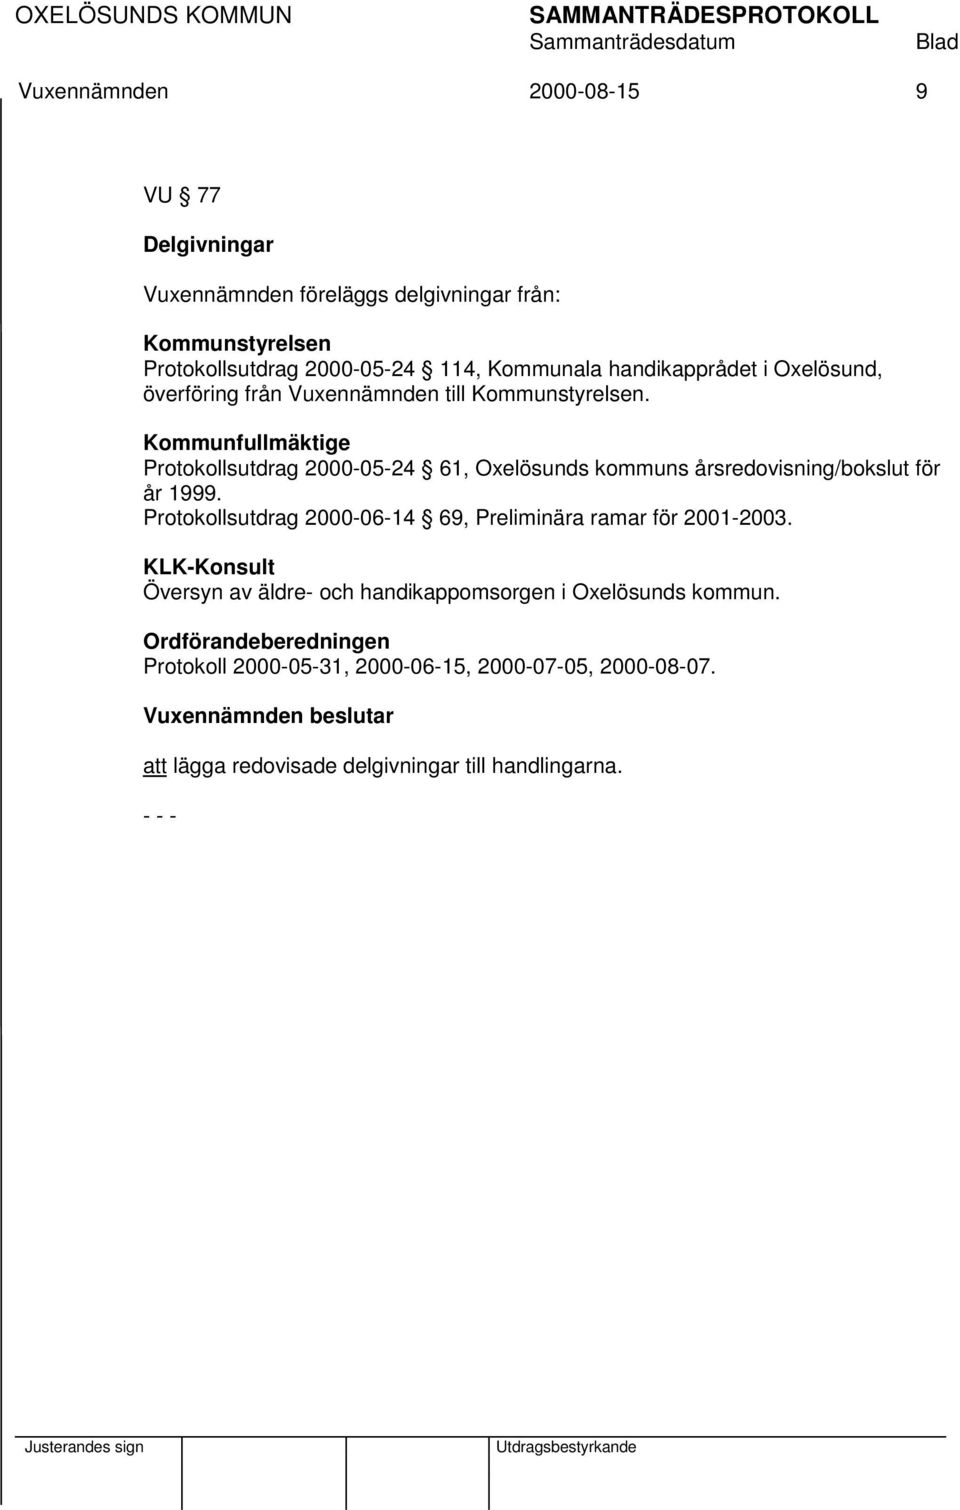 Kommunfullmäktige Protokollsutdrag 2000-05-24 61, Oxelösunds kommuns årsredovisning/bokslut för år 1999.